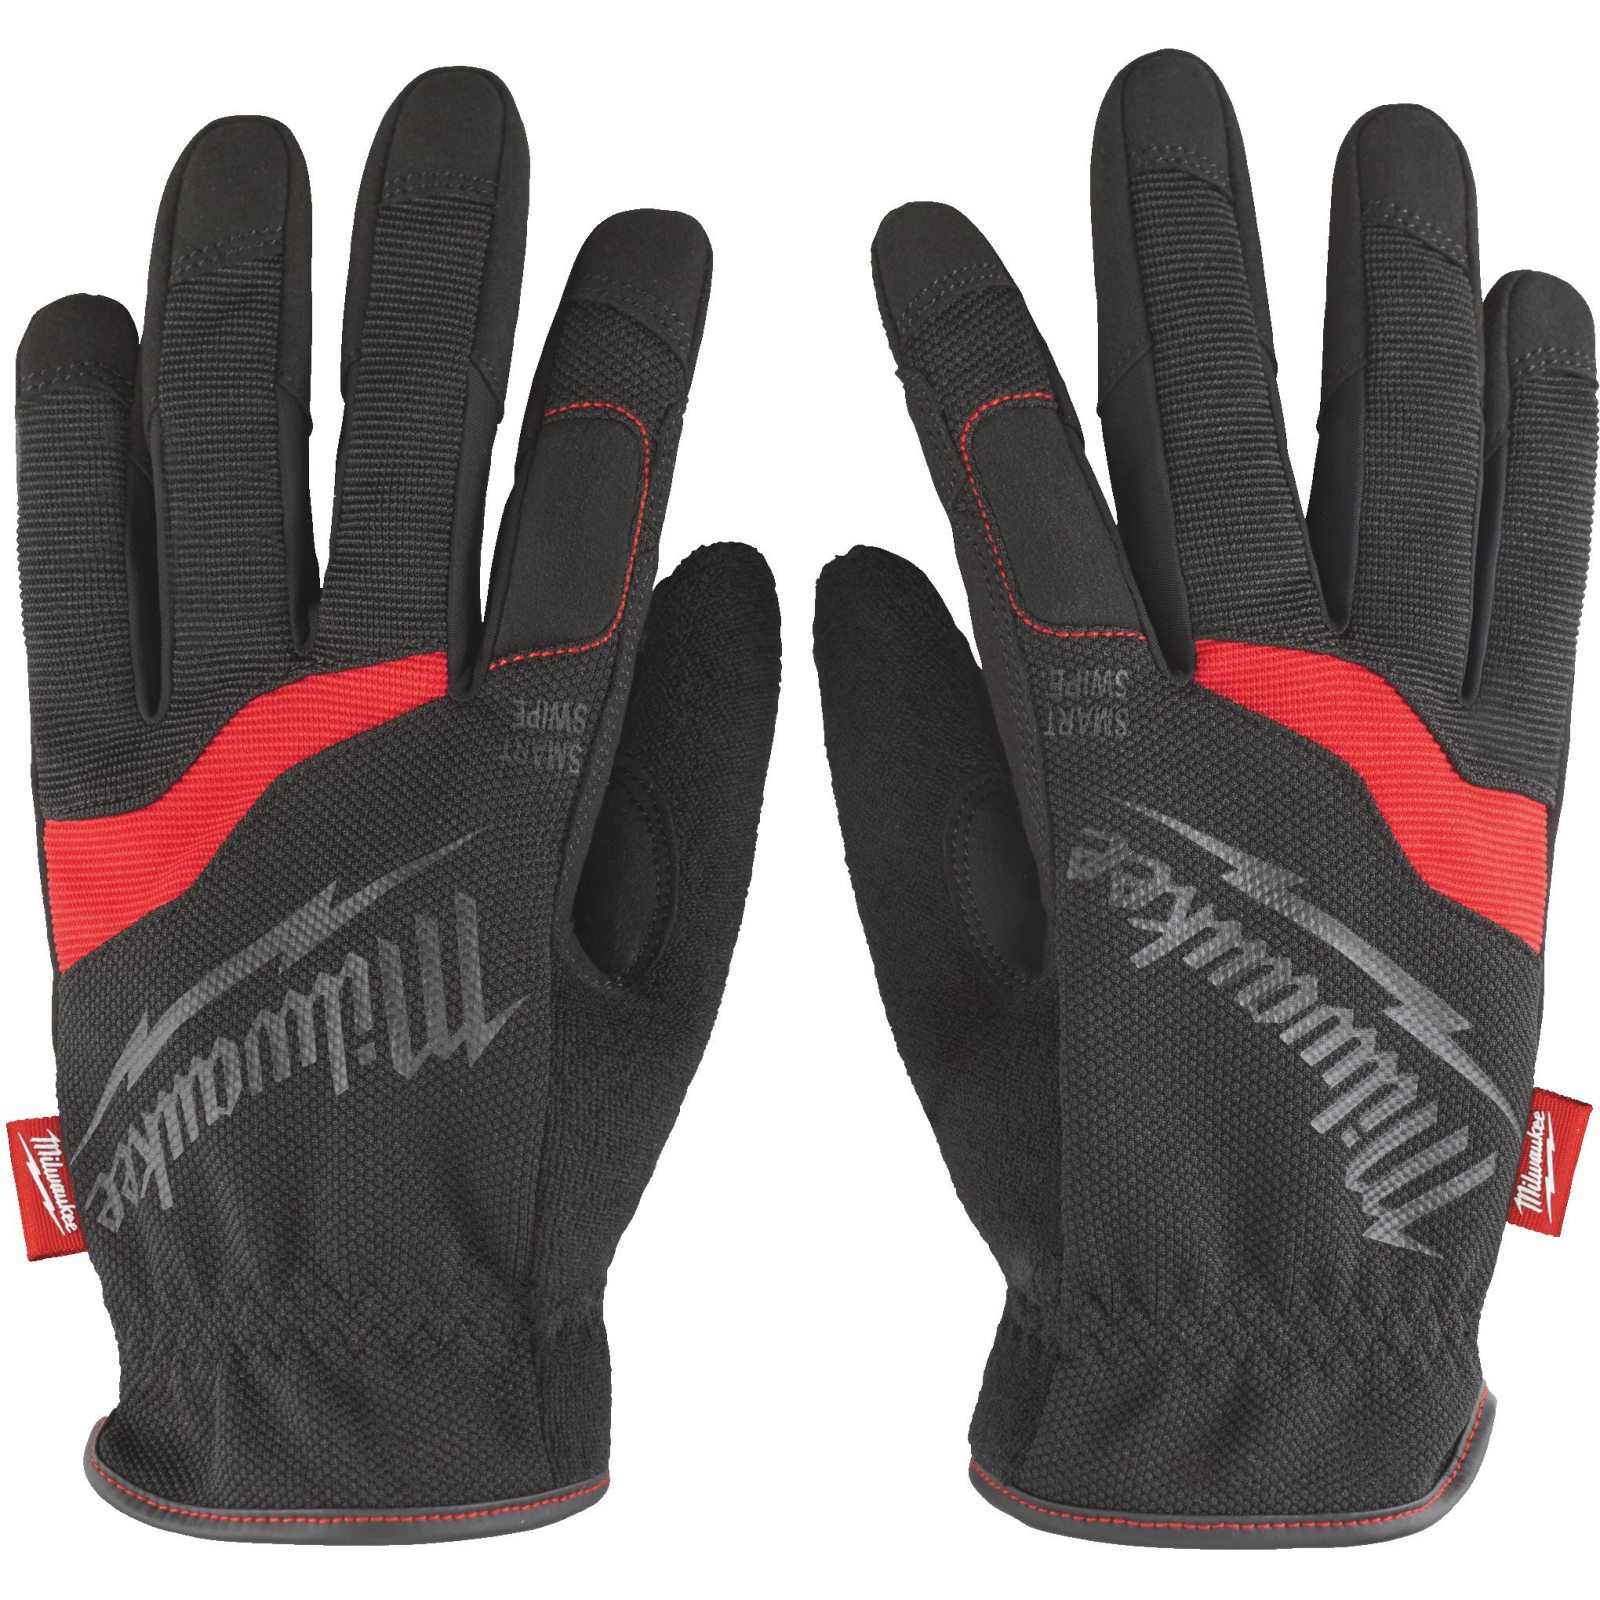 Защитные перчатки Milwaukee м'які Free-Flex, 8/M (48229711)